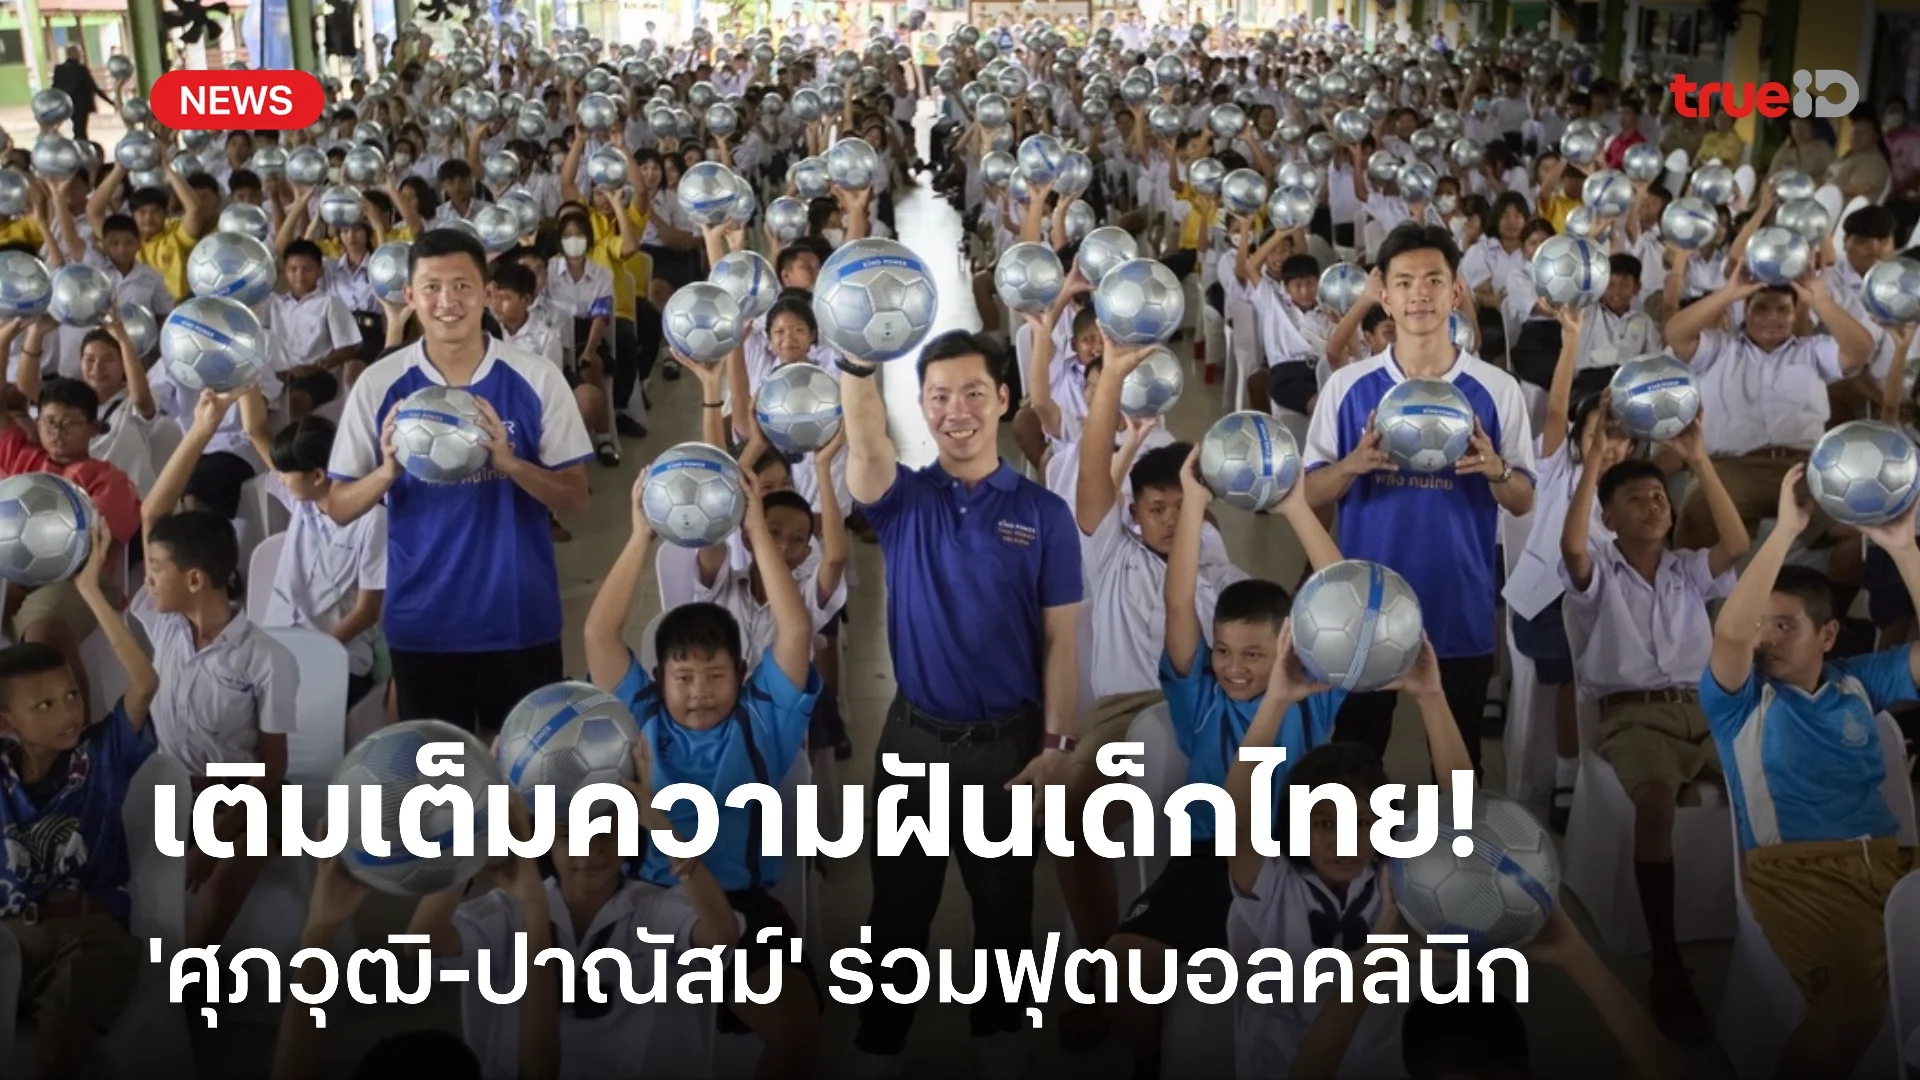 แจกลูกฟุตบอลทั่วไทย! คิง เพาเวอร์ ชวน 'ศุภวุฒิ-ปาณัสม์' ร่วมฟุตบอลคลินิก